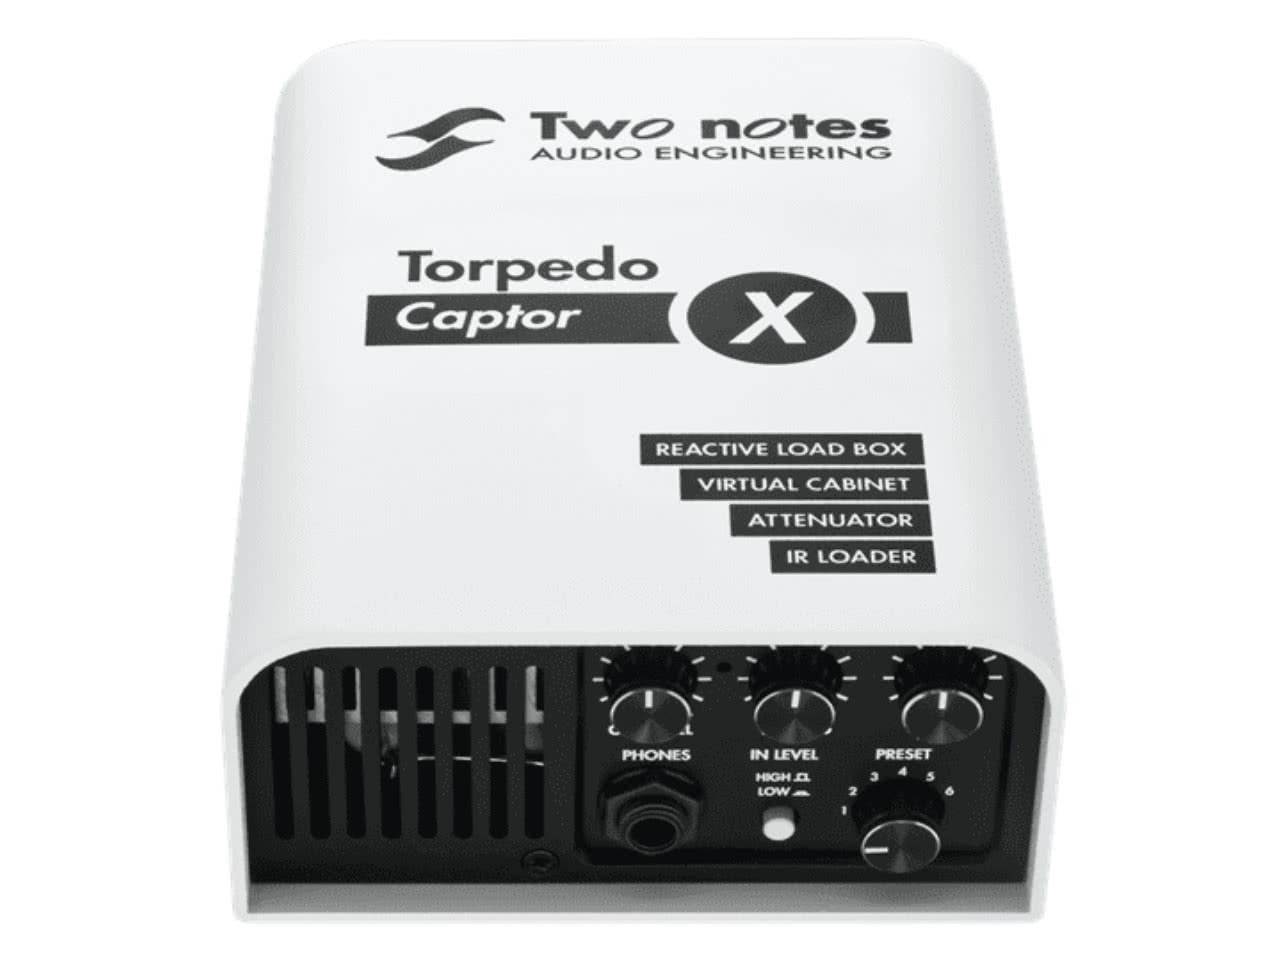 Load box. Two Notes Torpedo Captor. Аттенюатор лоадбокс. Torpedo Captor 8. Two Notes Torpedo Captor schematics.